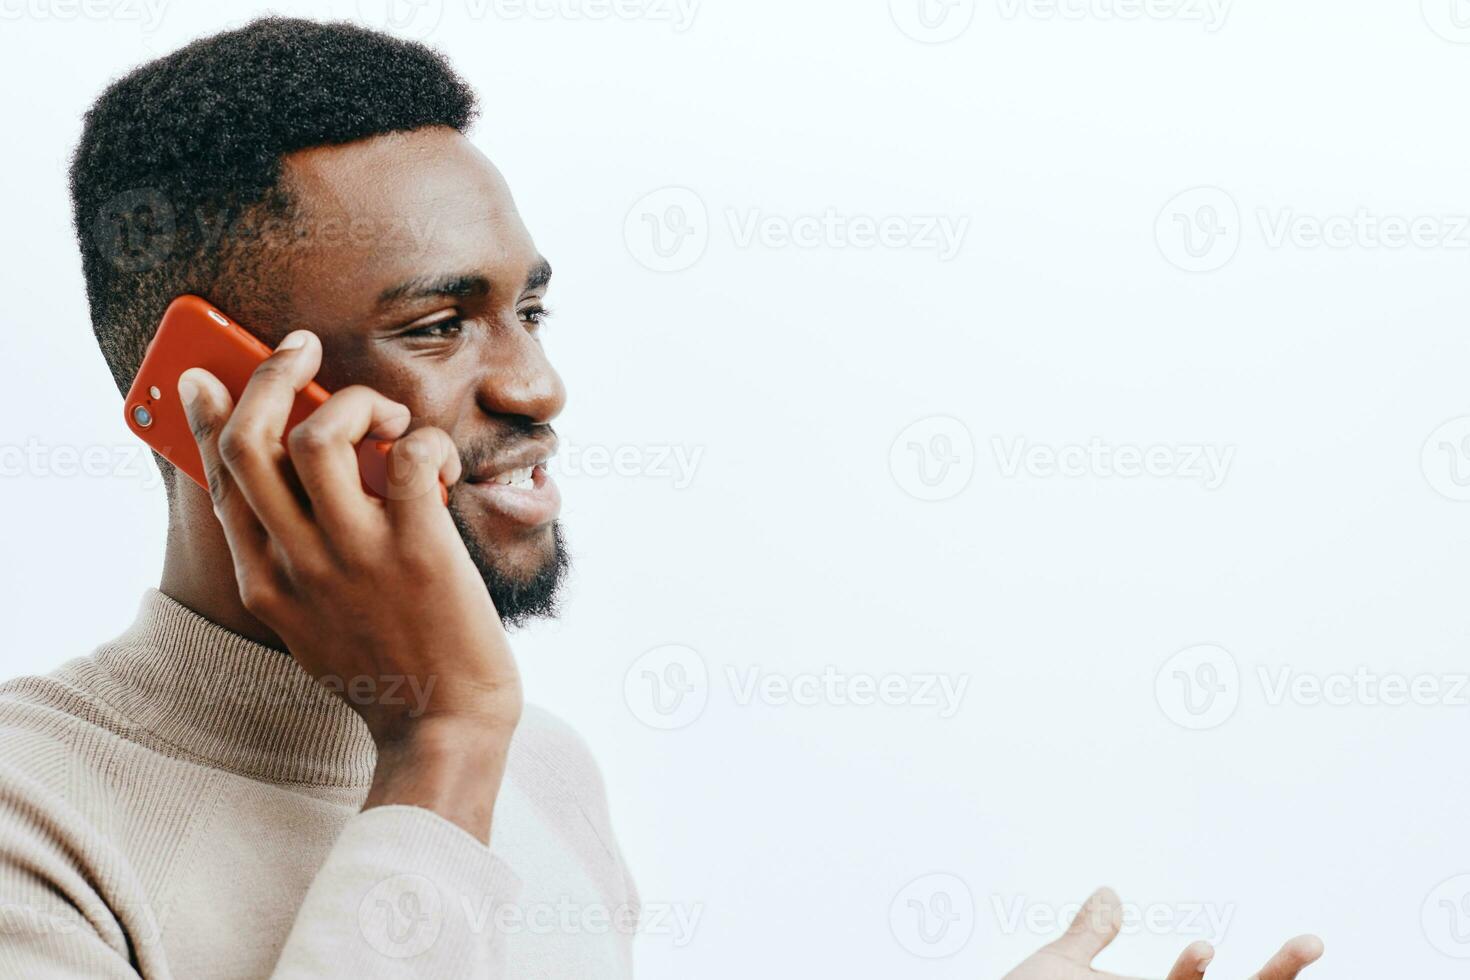 La technologie homme content téléphone intelligent Jeune mobile africain noir homme d'affaire téléphone sourire photo